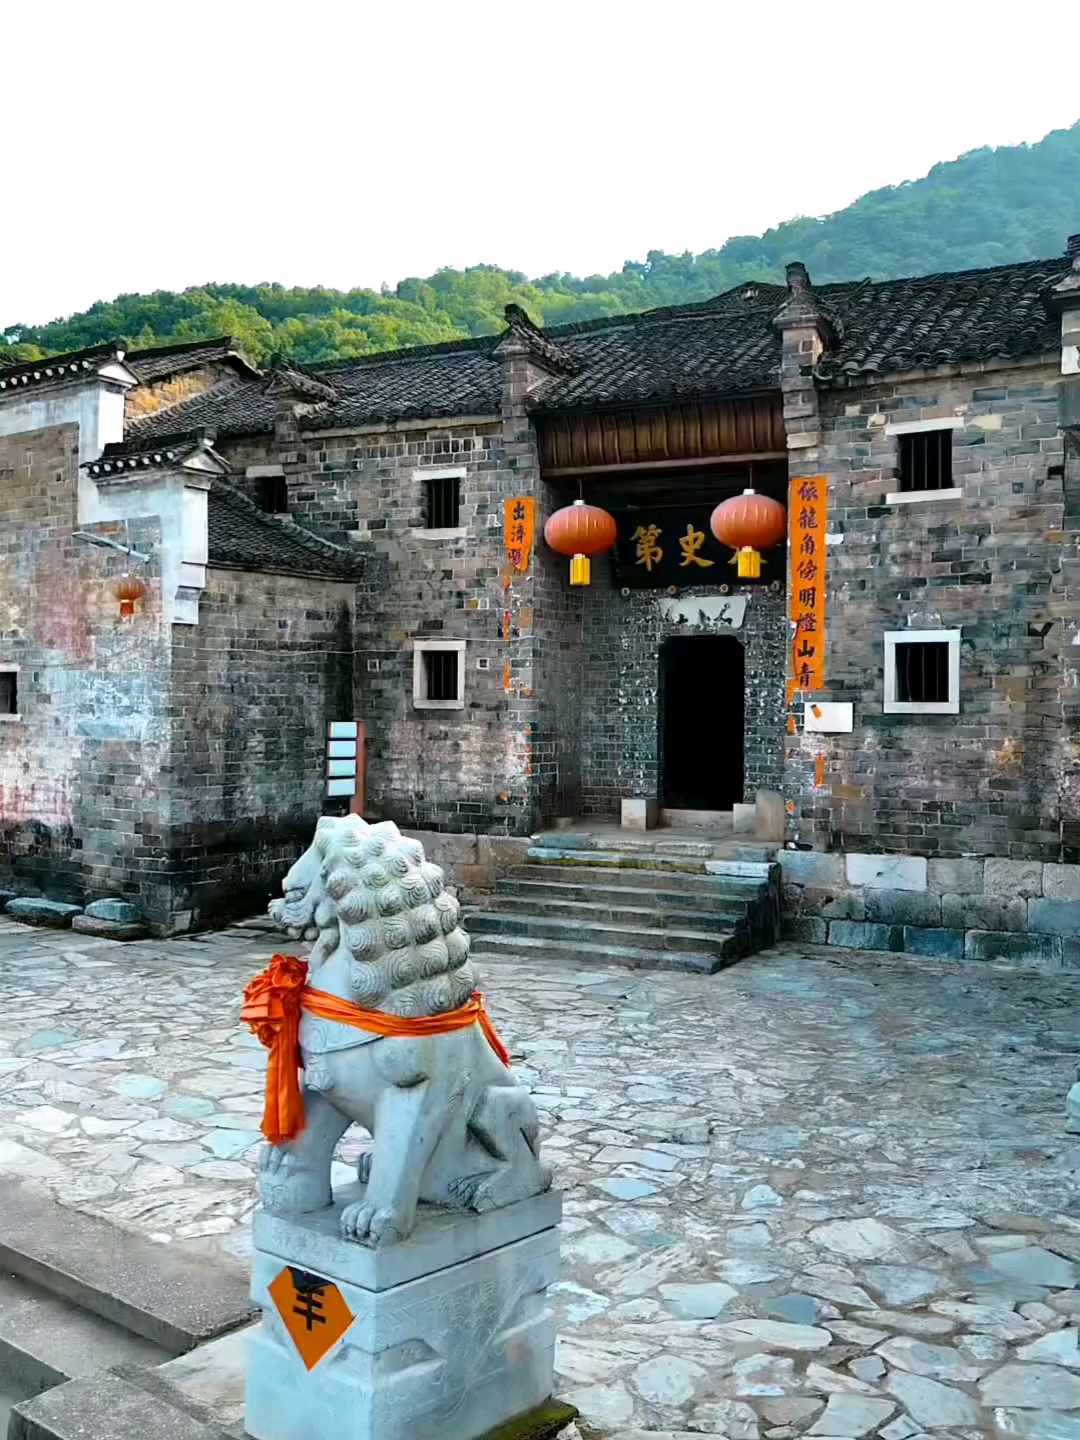 在湖北省大冶有这样一个传统古村落，它始建于明代，距今已有500年历史，被誉为“鄂东南书香门第第一村”